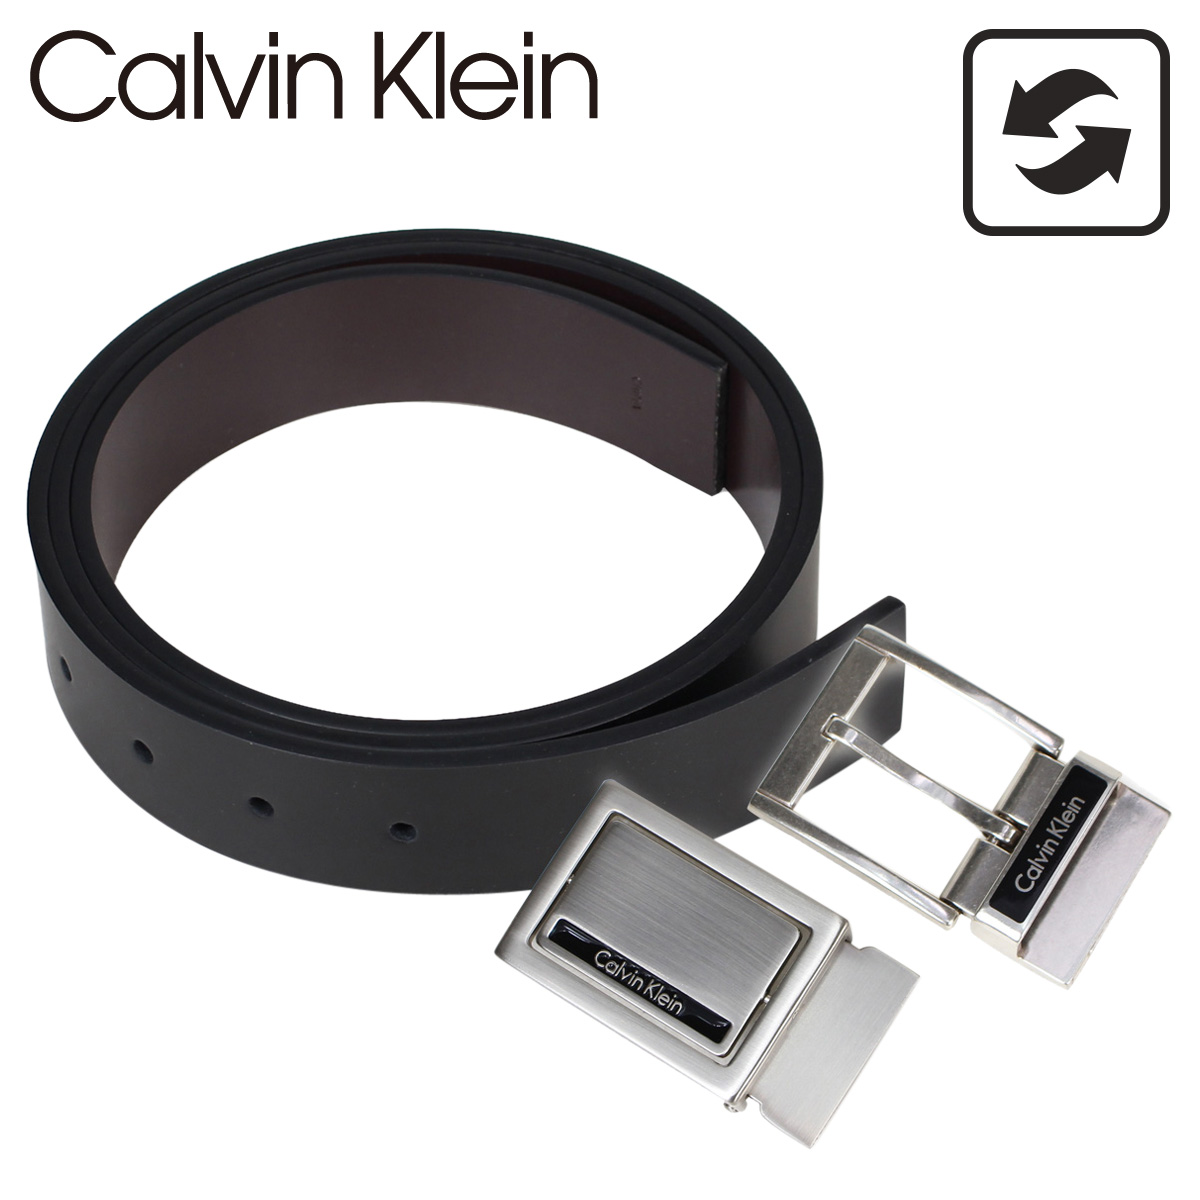 calvin klein belt and buckle set